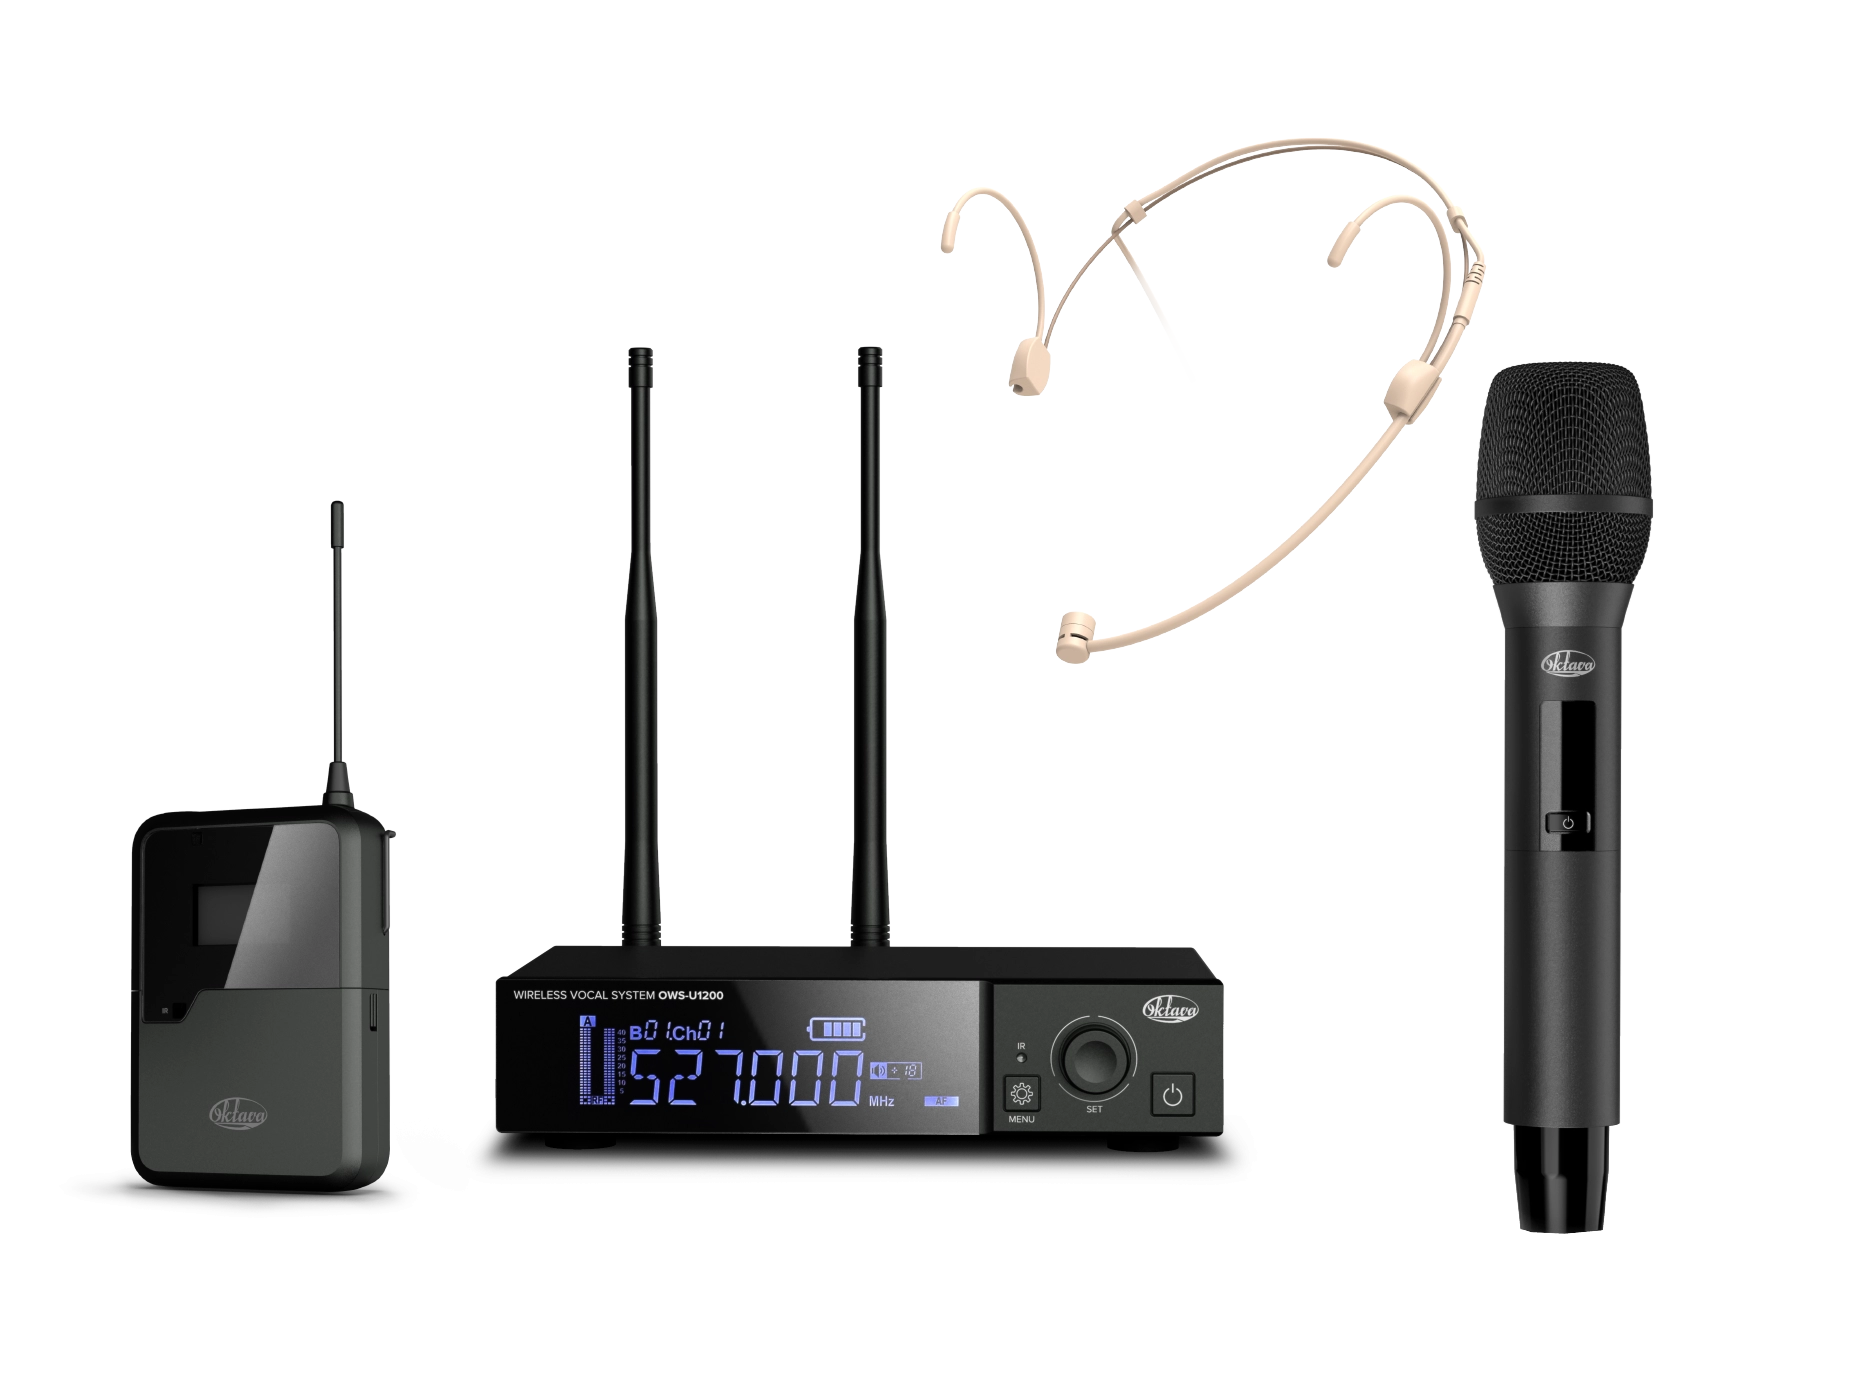 OWS-U1200HD одноканальная радиосистема с ручным и поясным передатчиками, головным микрофоном Октава